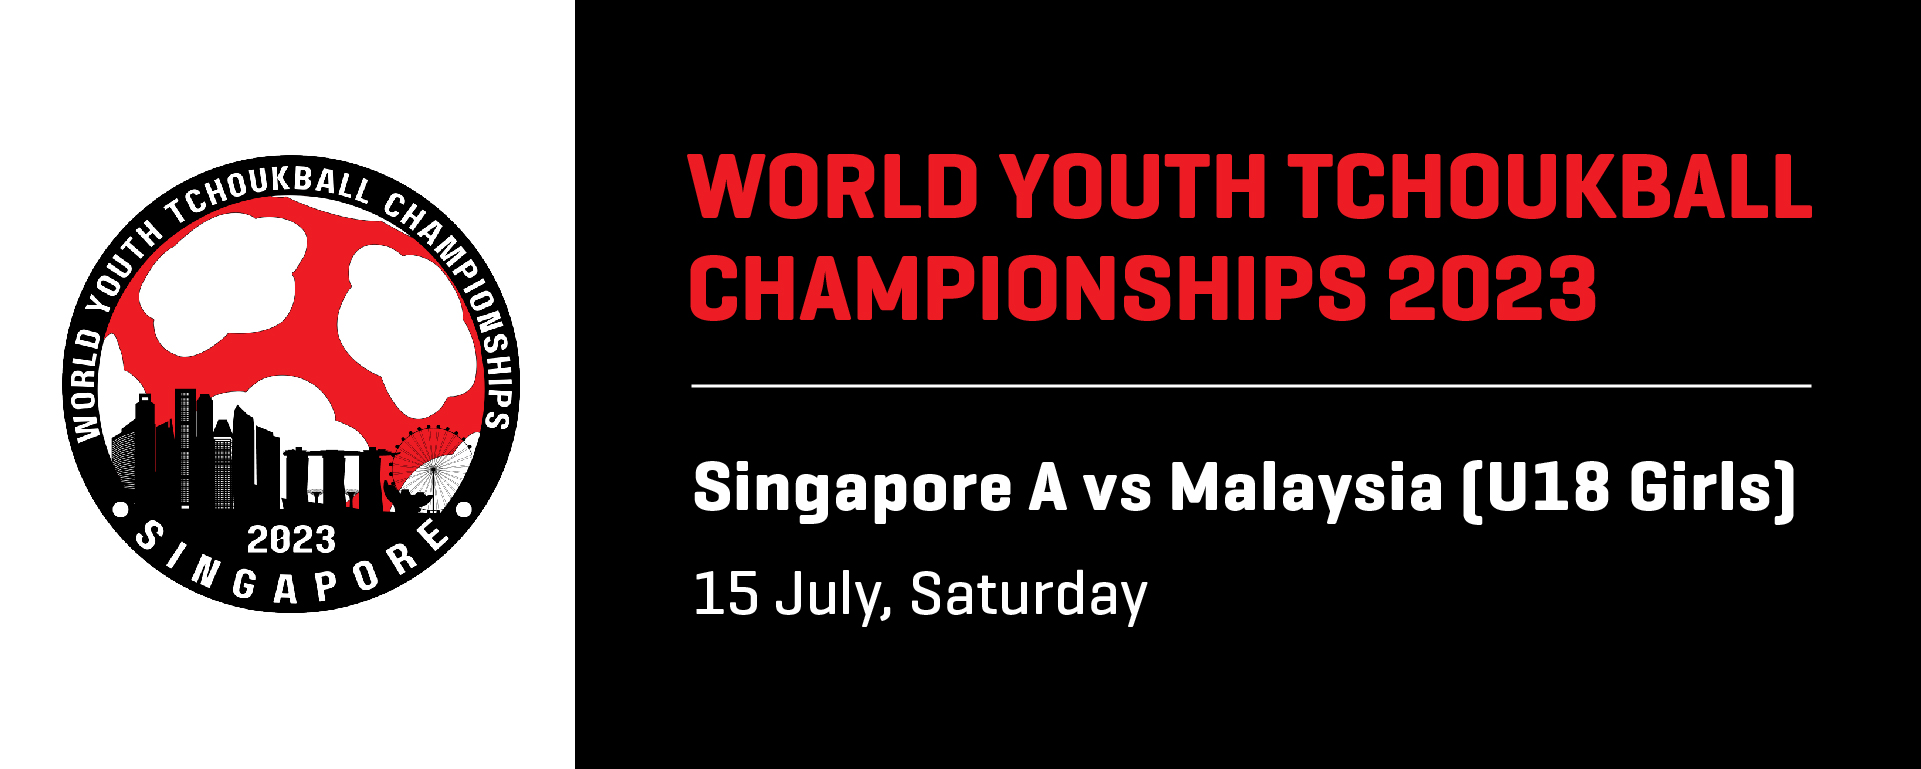 World Youth Tchoukball Championships 2023 | U18 Girls Singapore A vs Malaysia